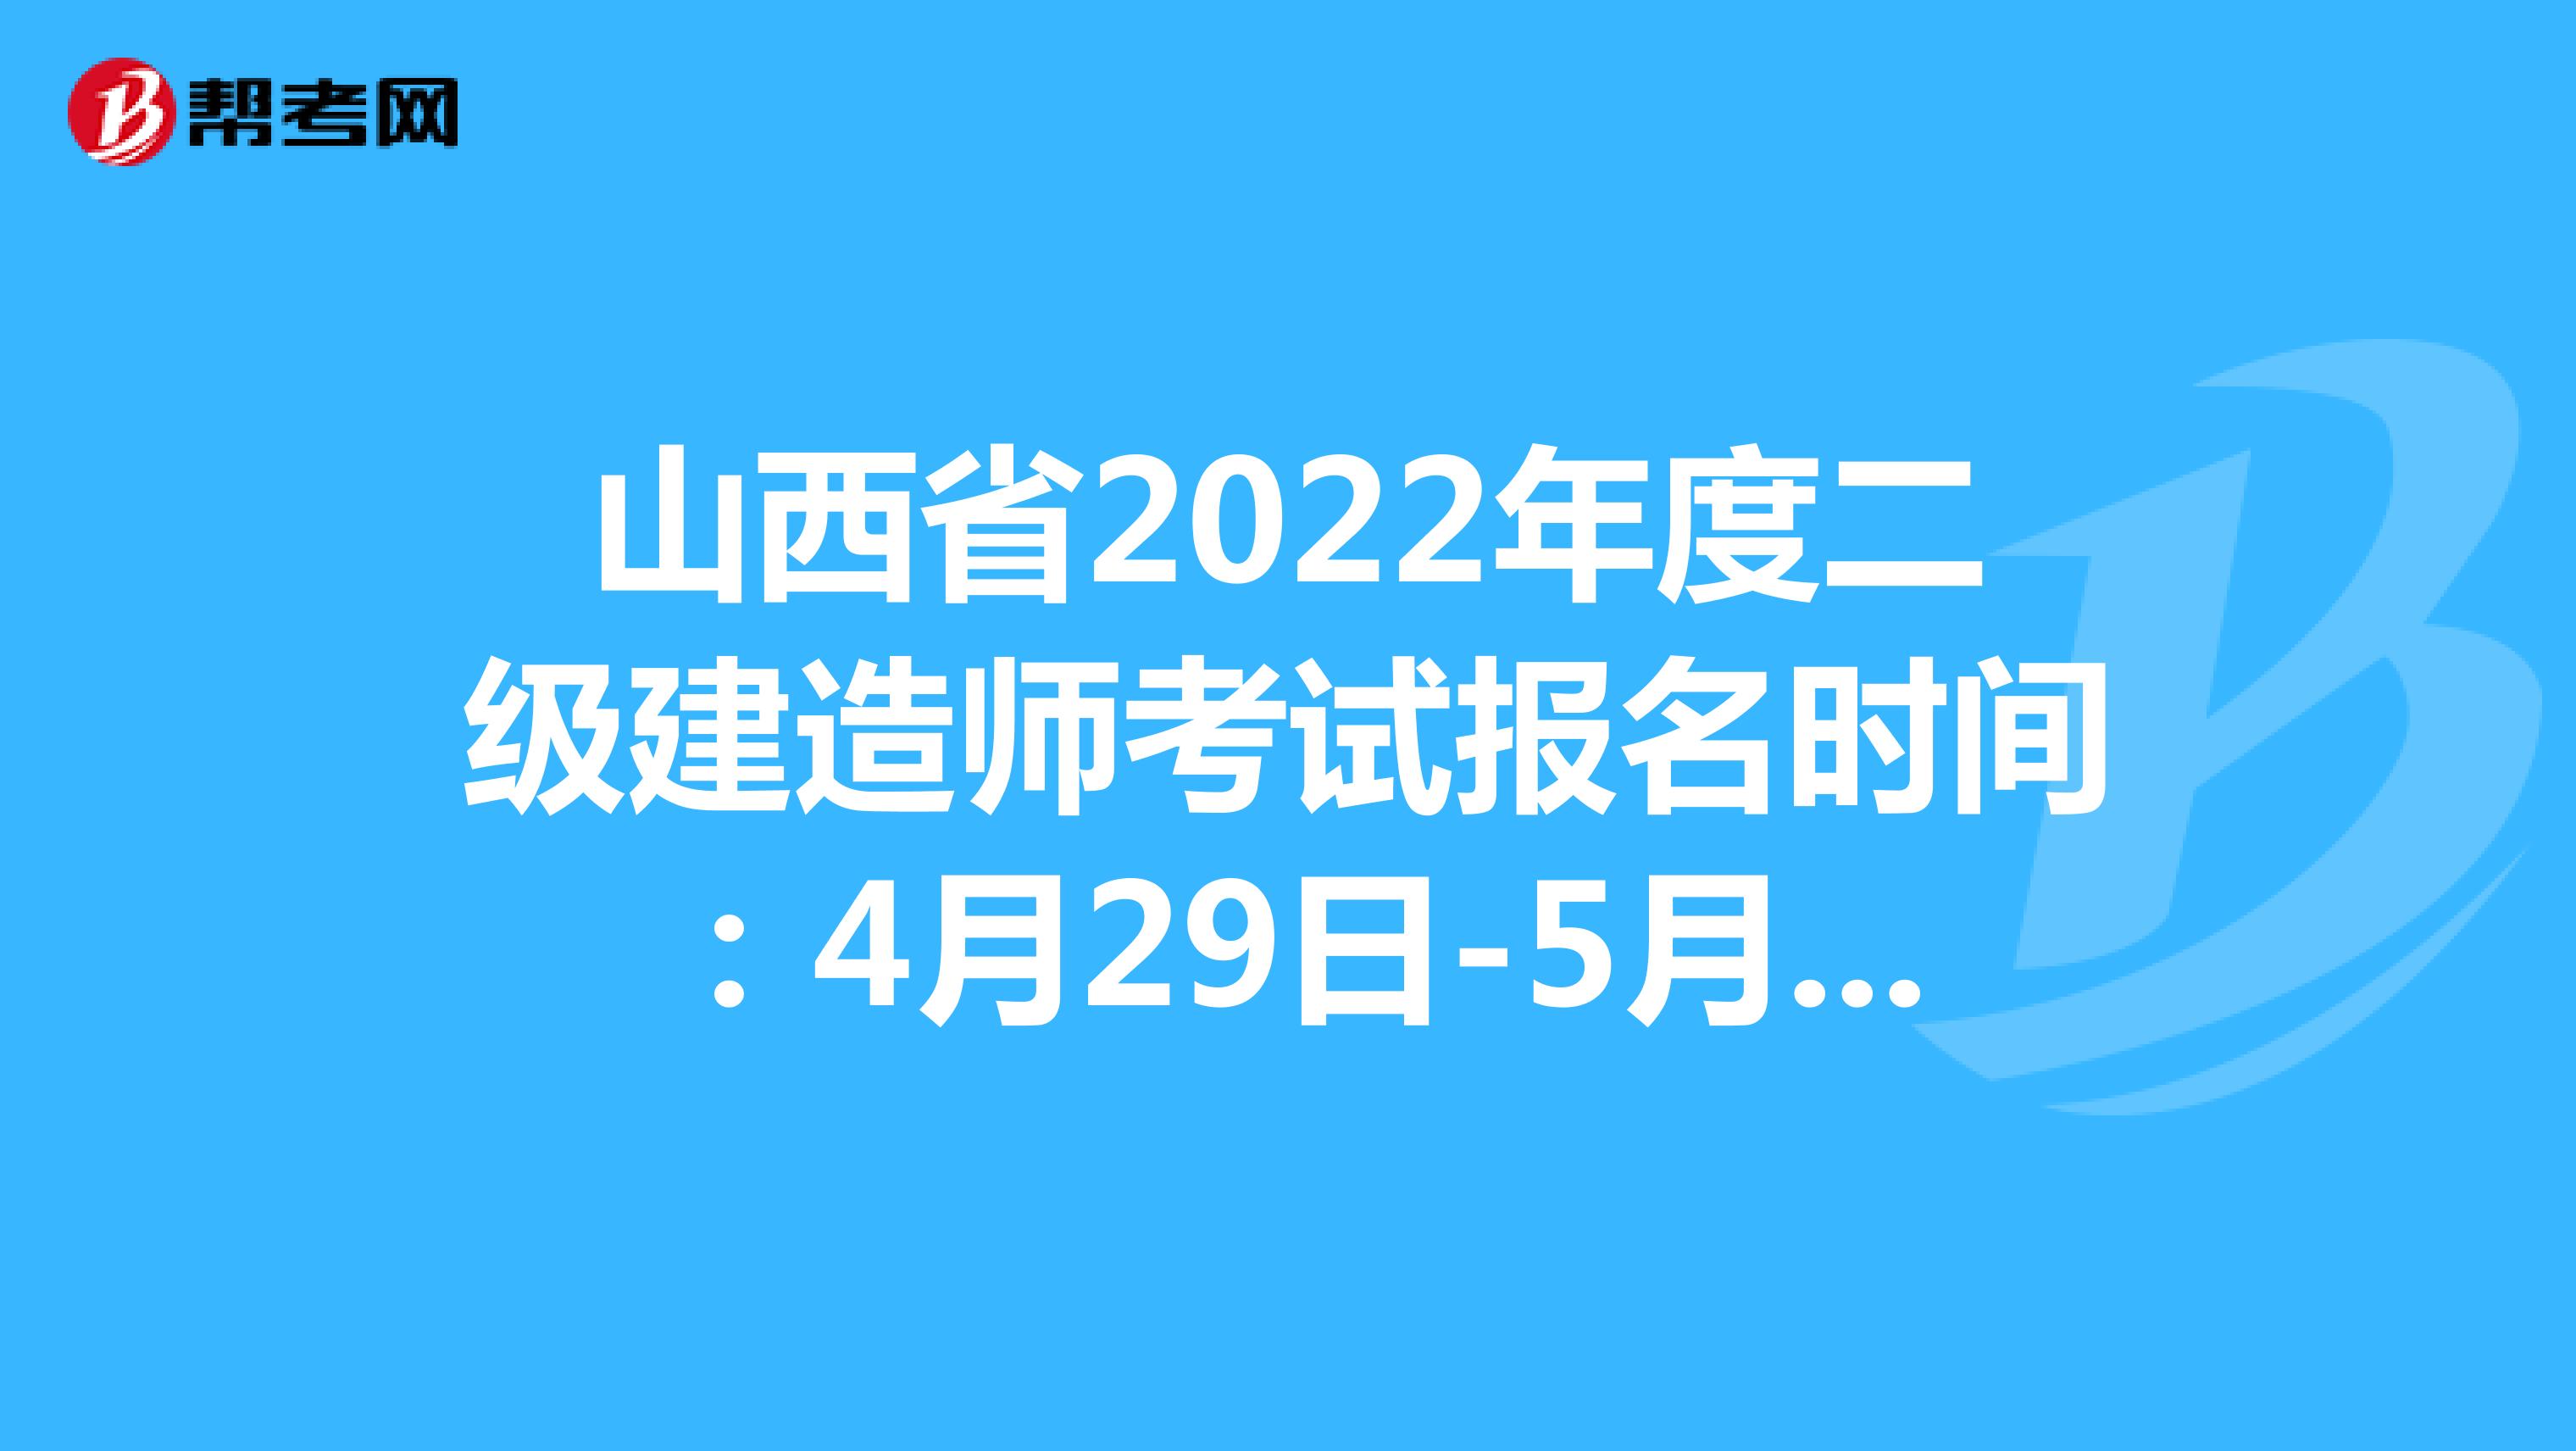 山西省2022年度二级建造师考试报名时间：4月29日-5月6日